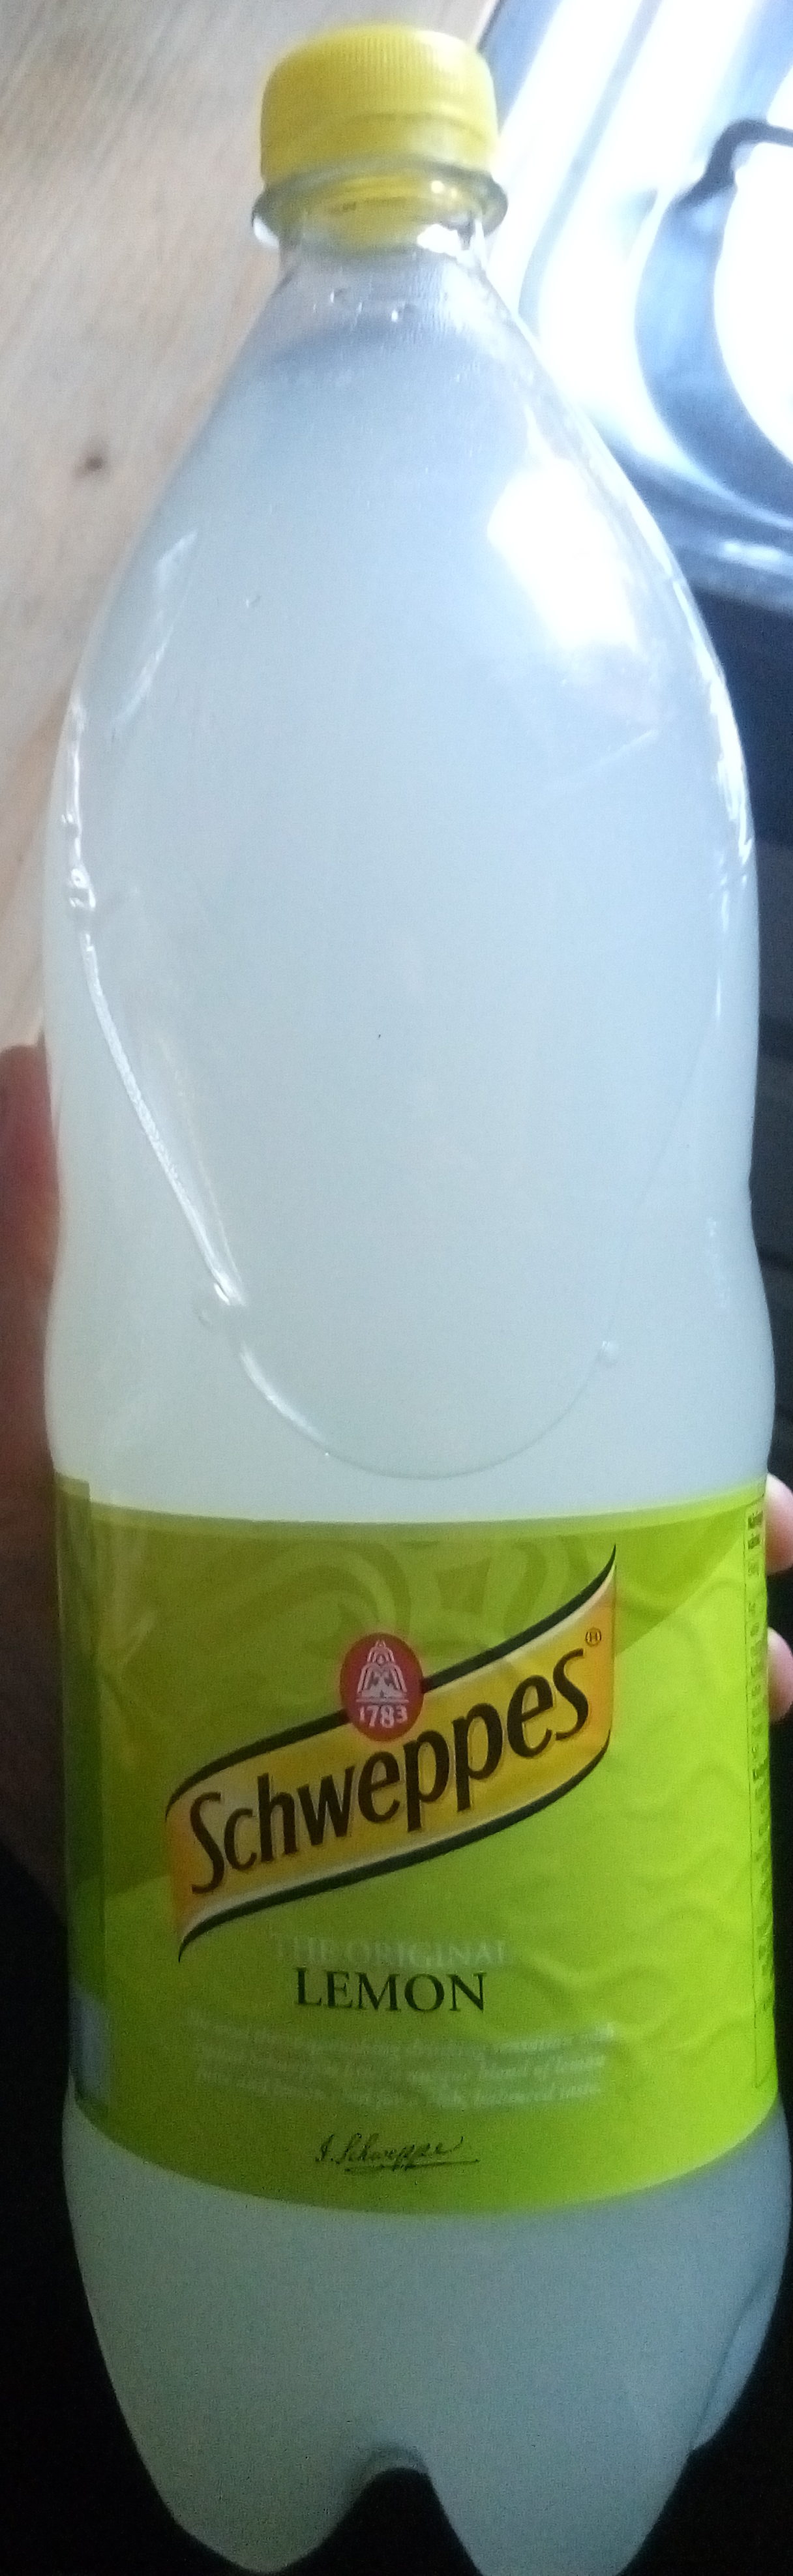 Lemon - Produkt